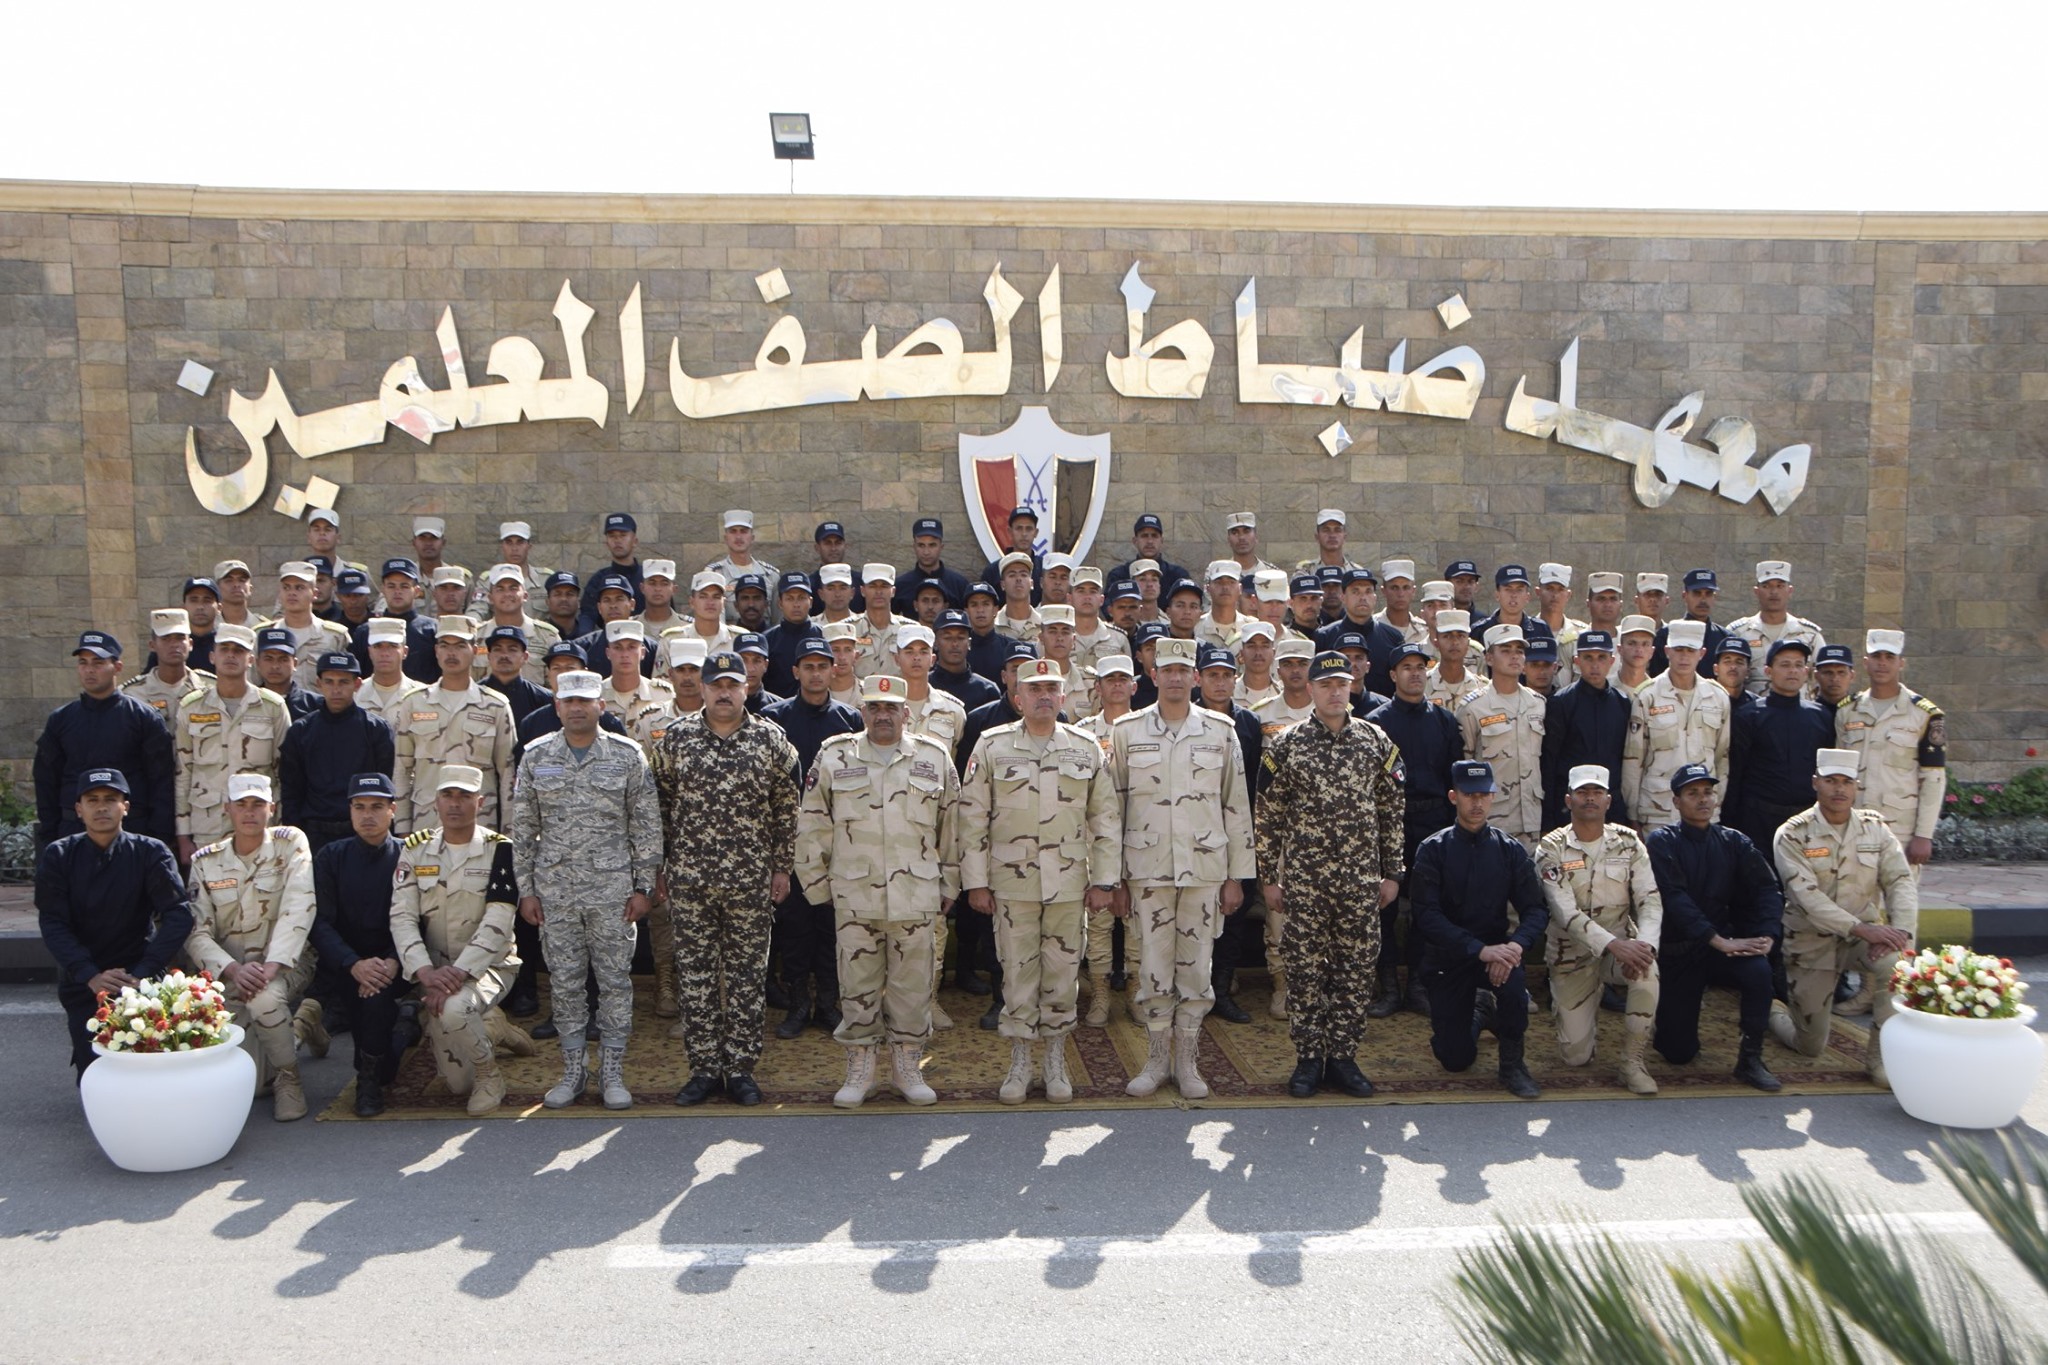   القوات المسلحة تستضيف طلبة معهد معاونى الأمن للتعايش مع طلبة معهد ضباط الصف المعلمين